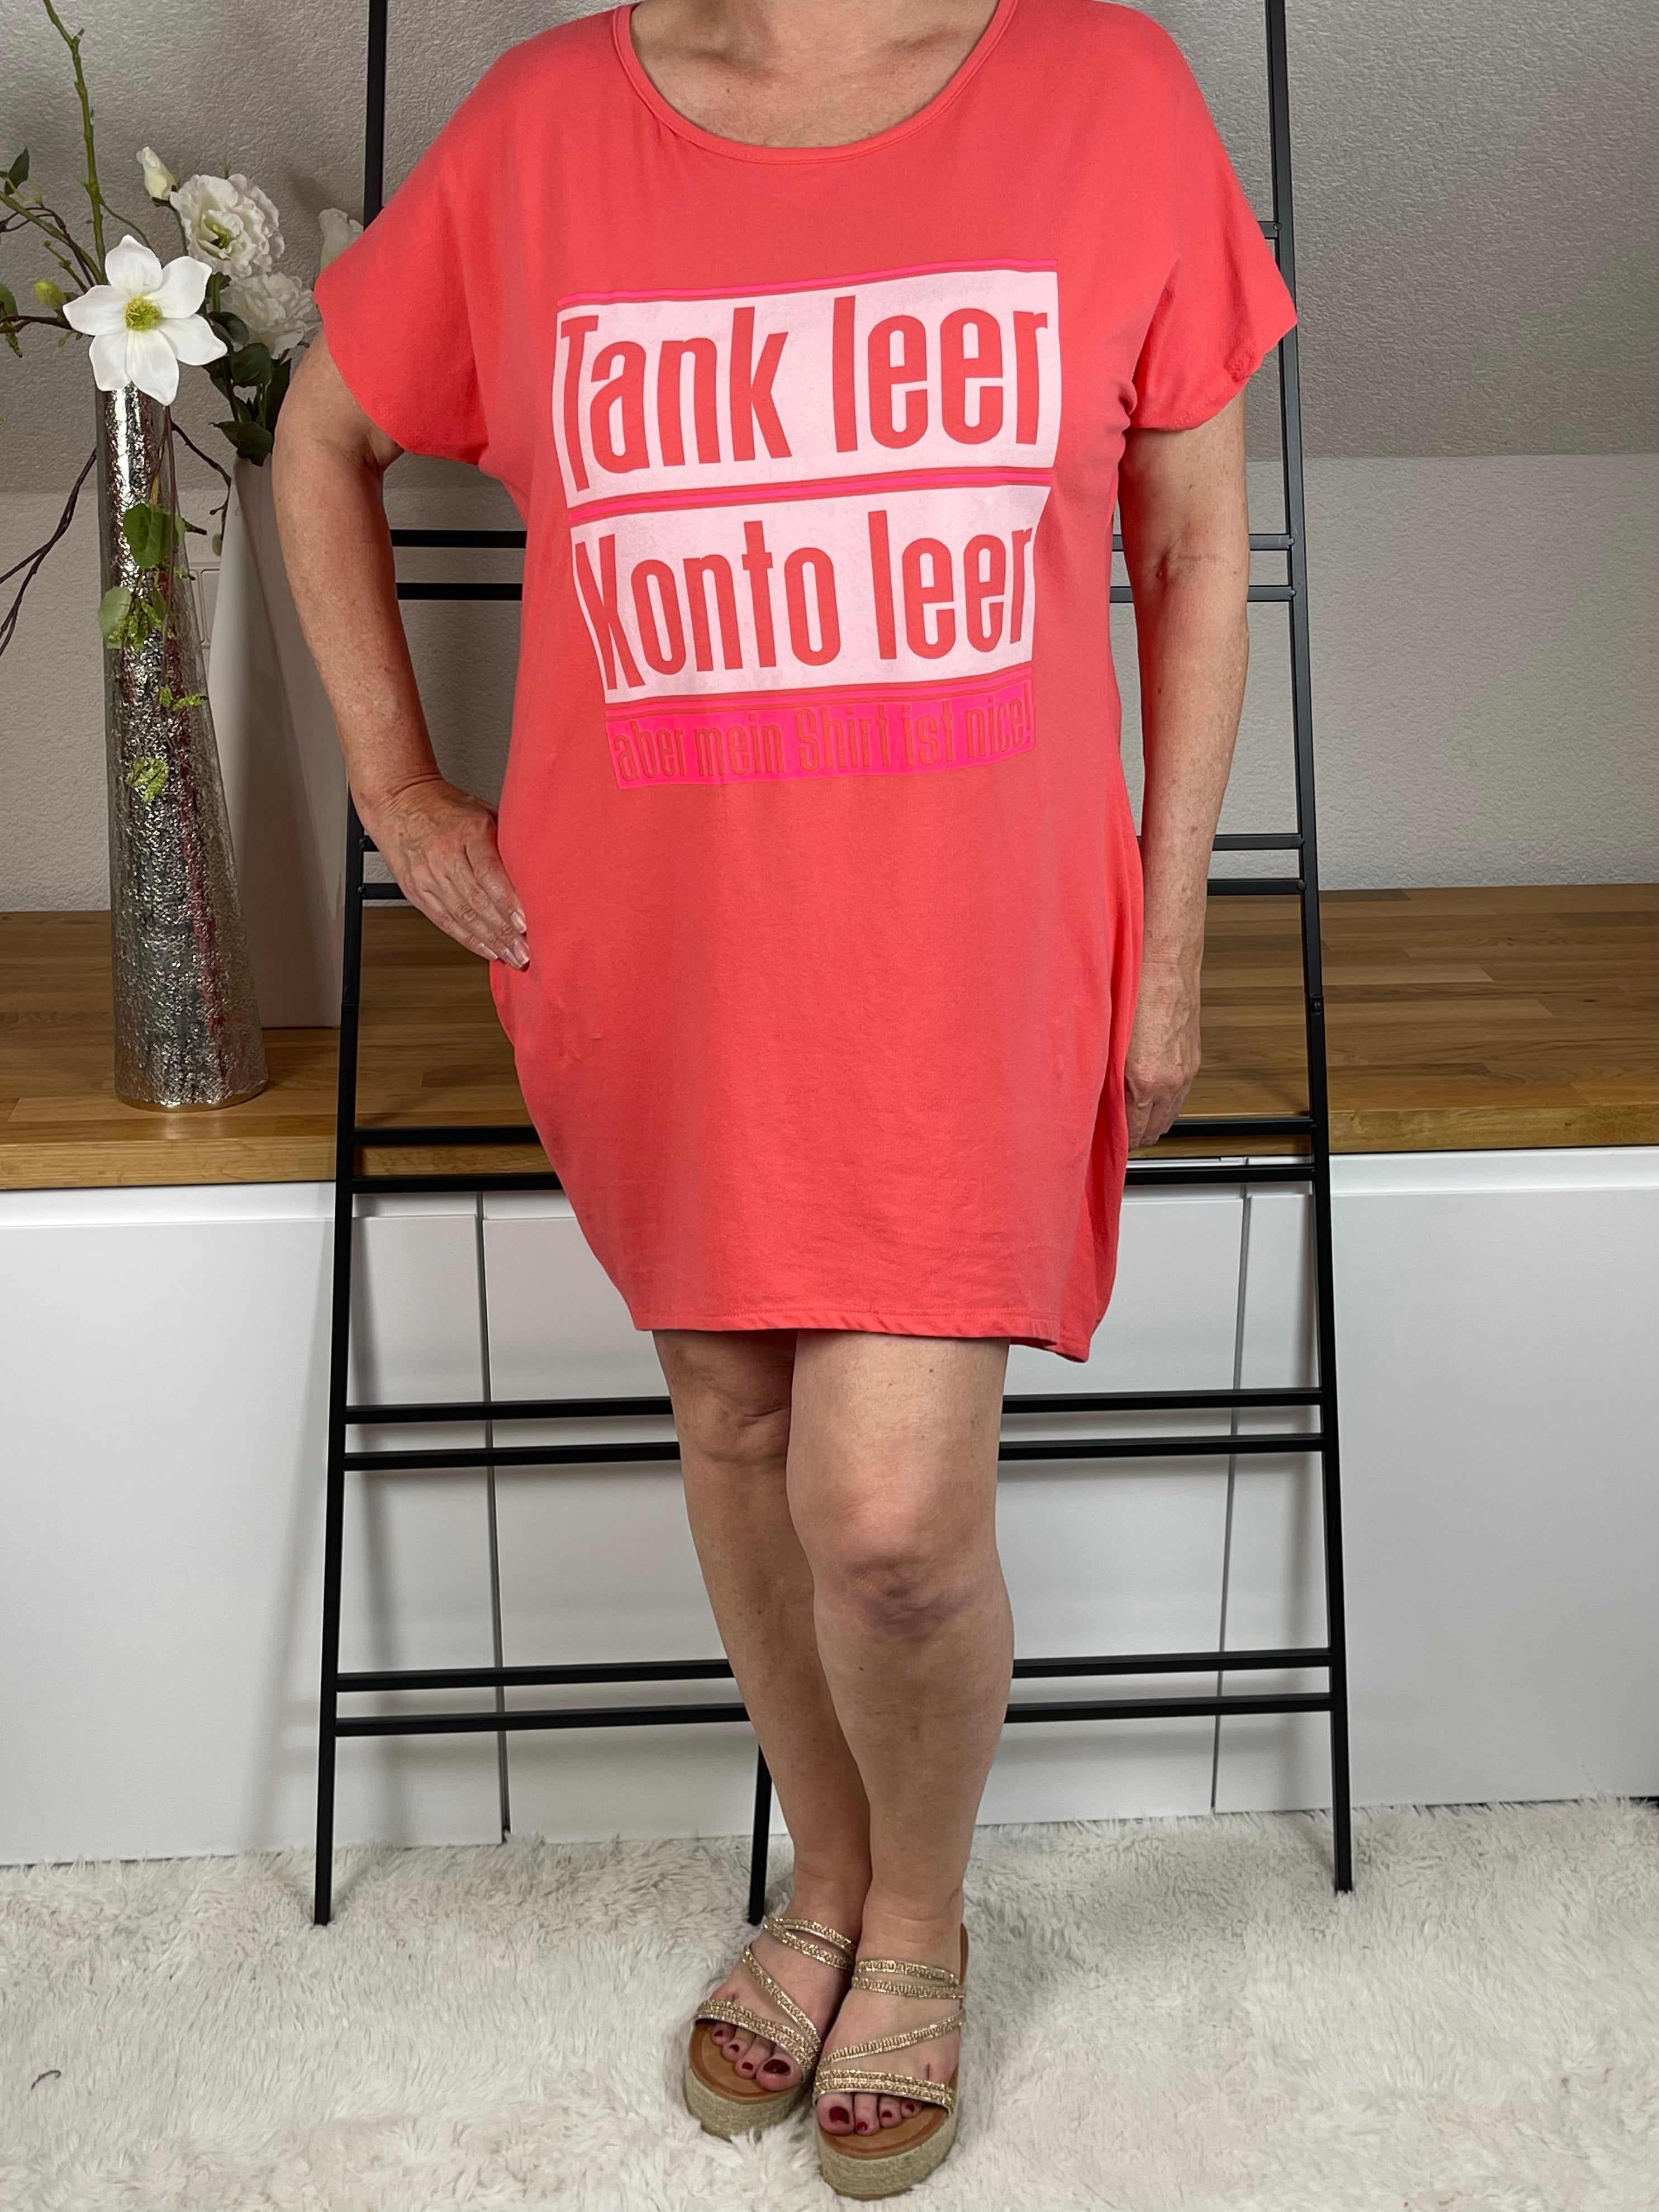 Maxi - Shirt - Kleid  „Tank leer…“ Einheitsgrösse Gr. 40 - 46